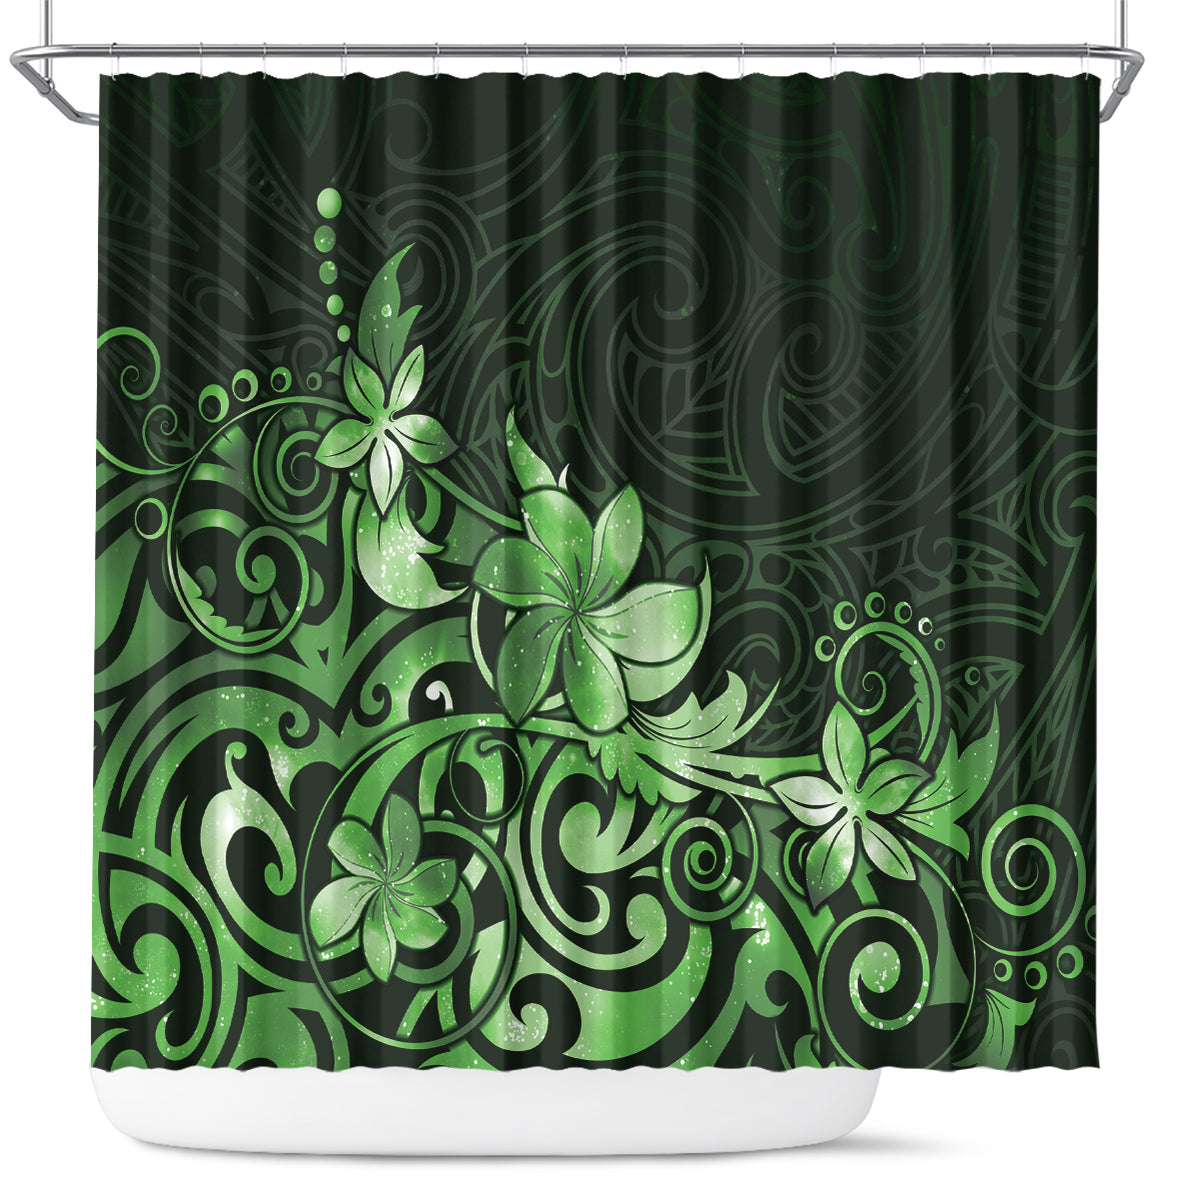 Matariki New Zealand Shower Curtain Maori Pattern Green Galaxy